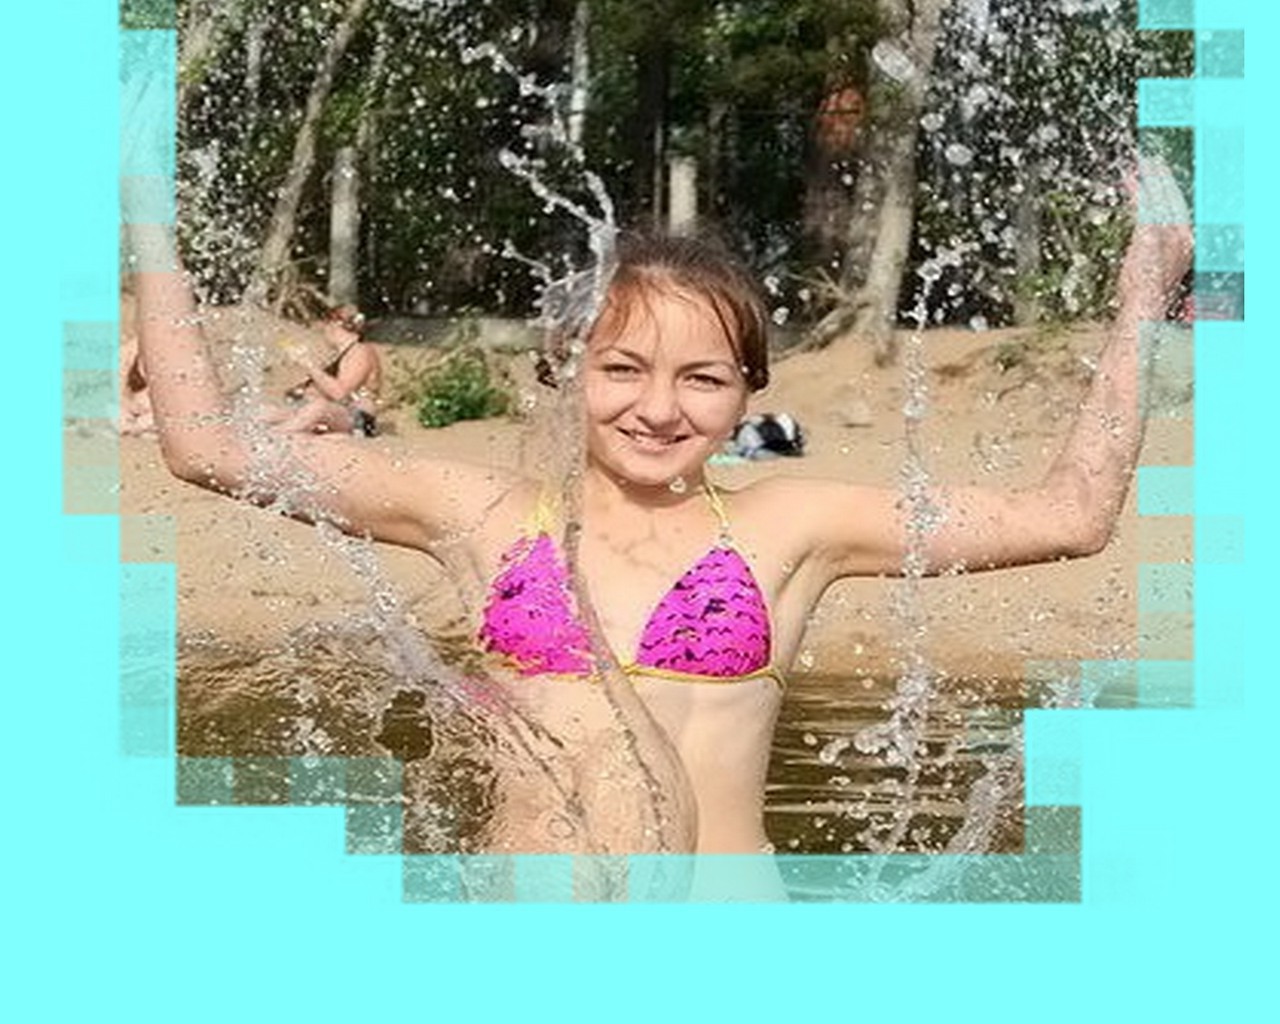 на отдыхе лето воды мокрый релаксация удовольствие отдых плавание бассейн природа счастье красивые девушка ребенок женщина на открытом воздухе молодой удовольствия радость образ жизни веселый